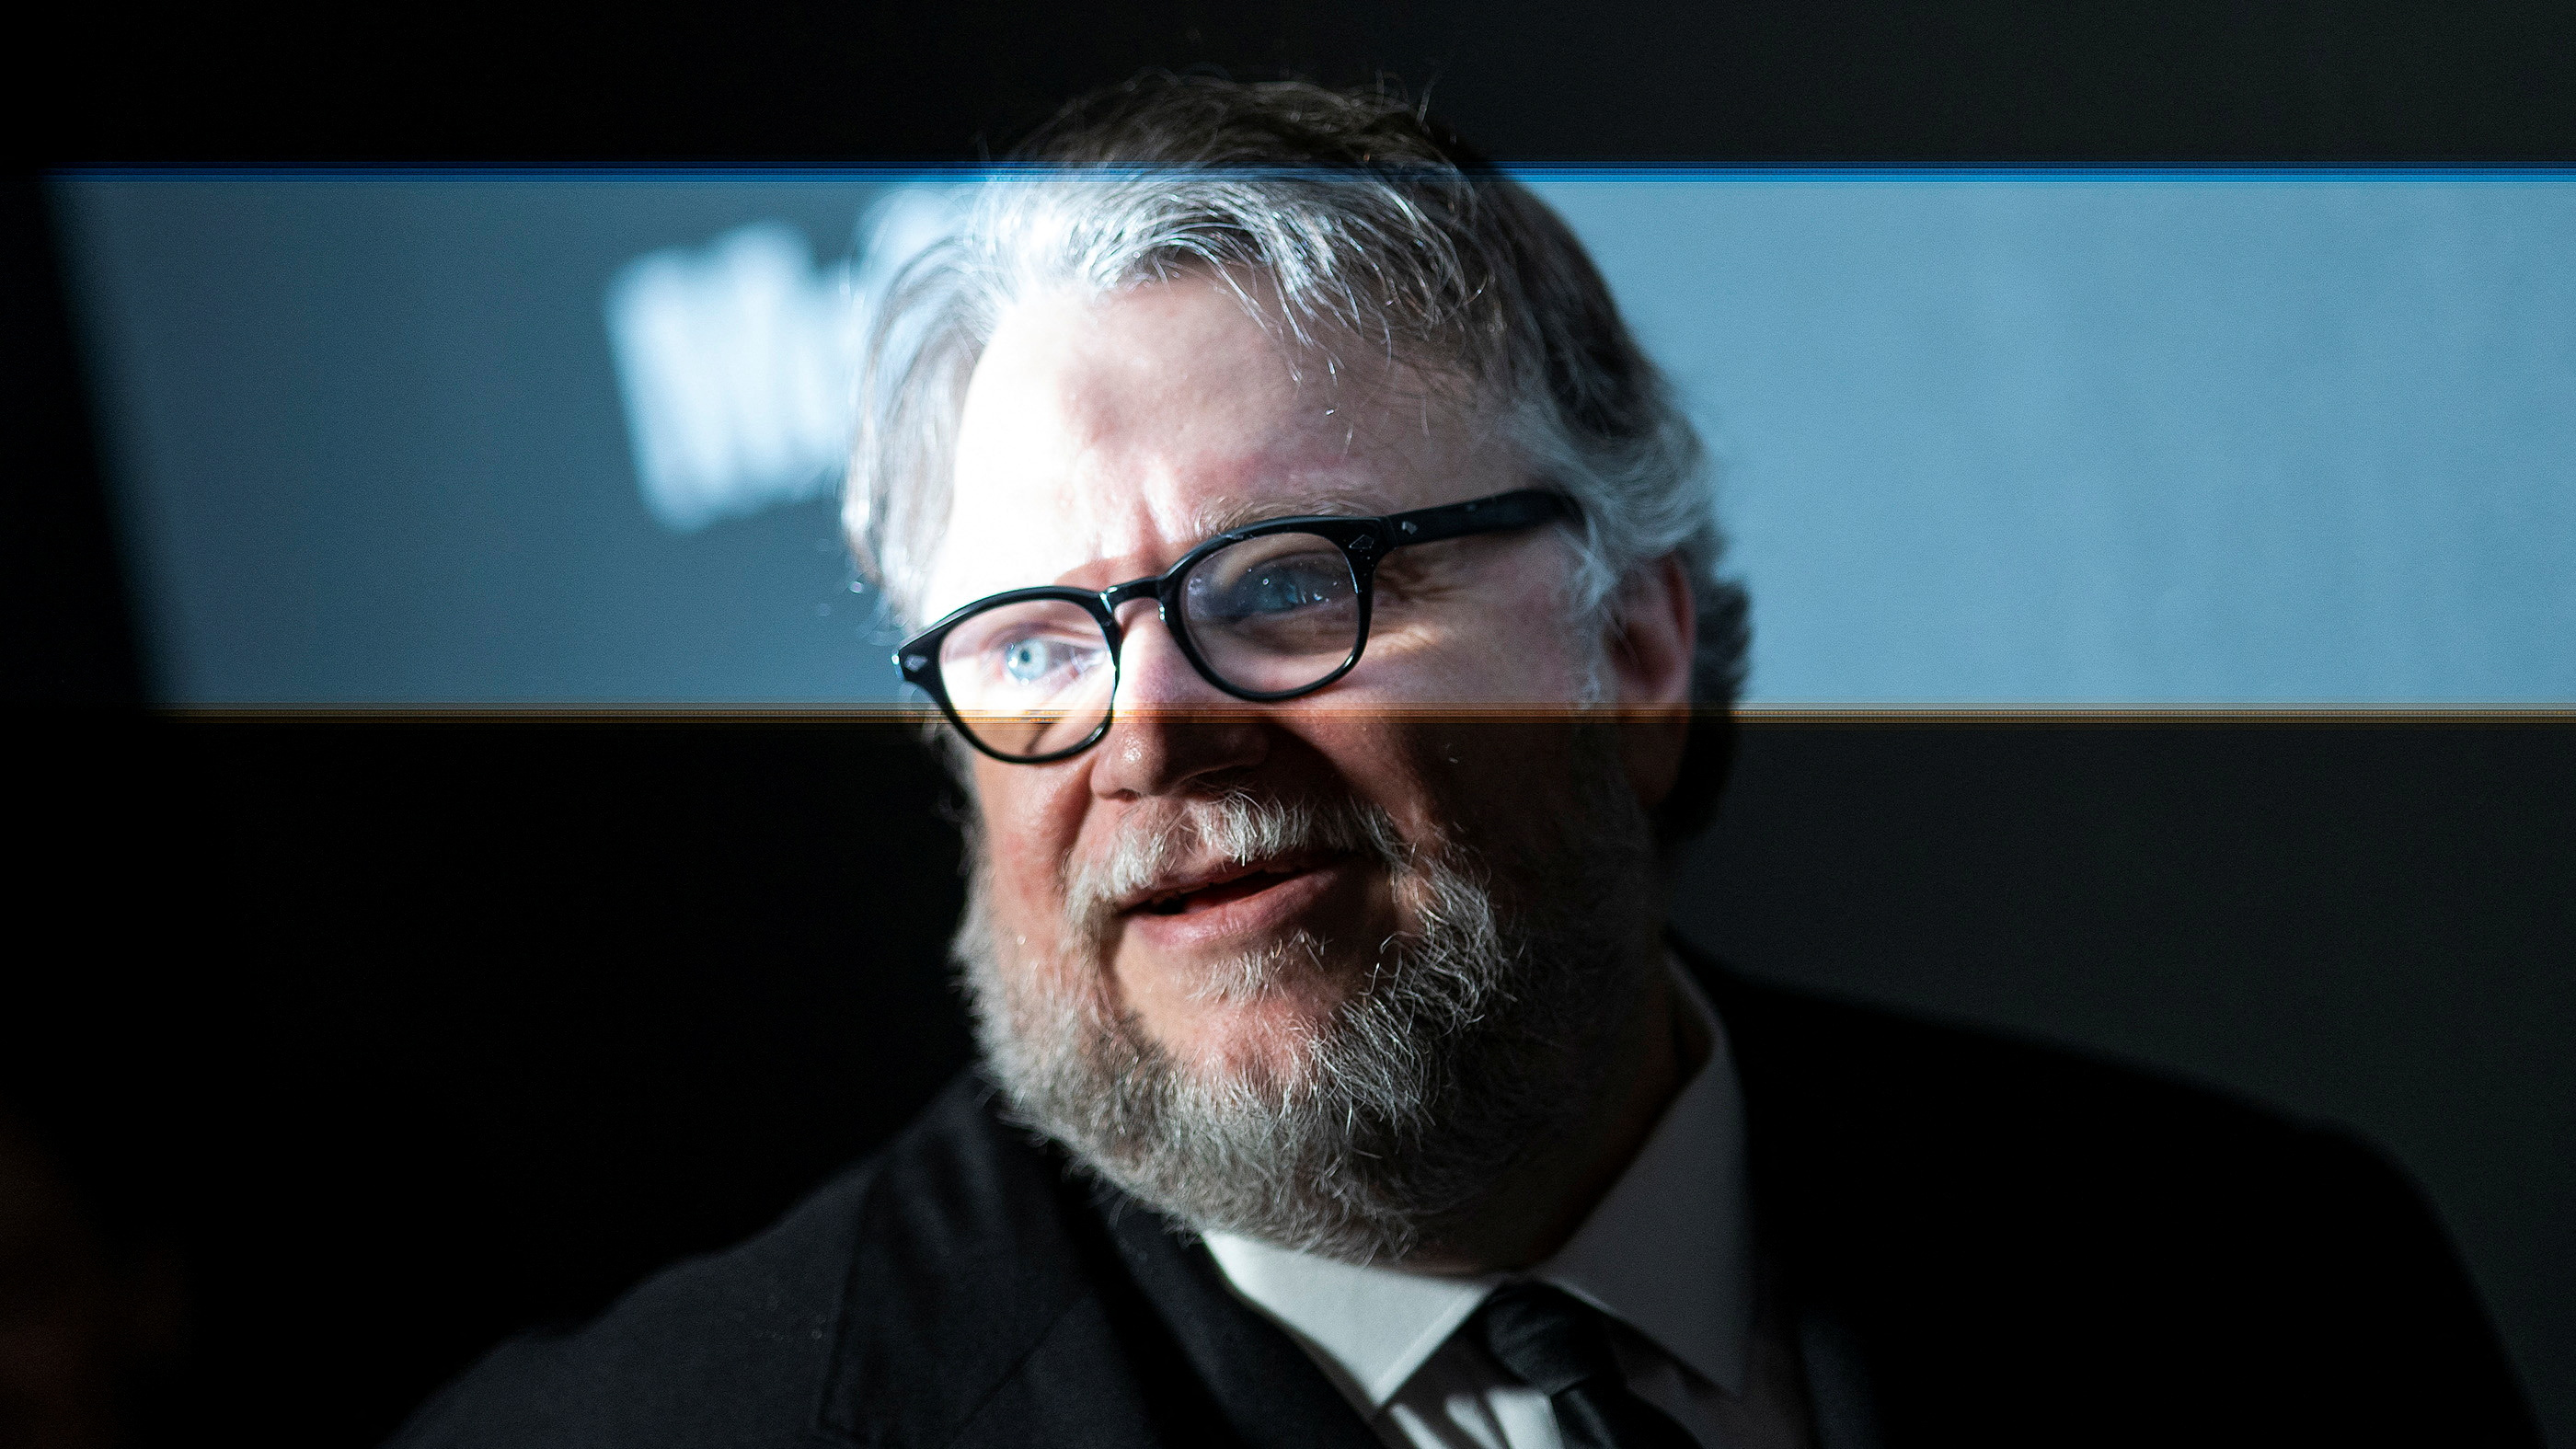 Guillermo del Toro en la 15° edición del "MoMa's Annual Film Benefit", realizado en su honor en el Museo de Arte Moderno de Nueva York, el 8 de diciembre de 2022 (Foto: REUTERS/Eduardo Munoz)